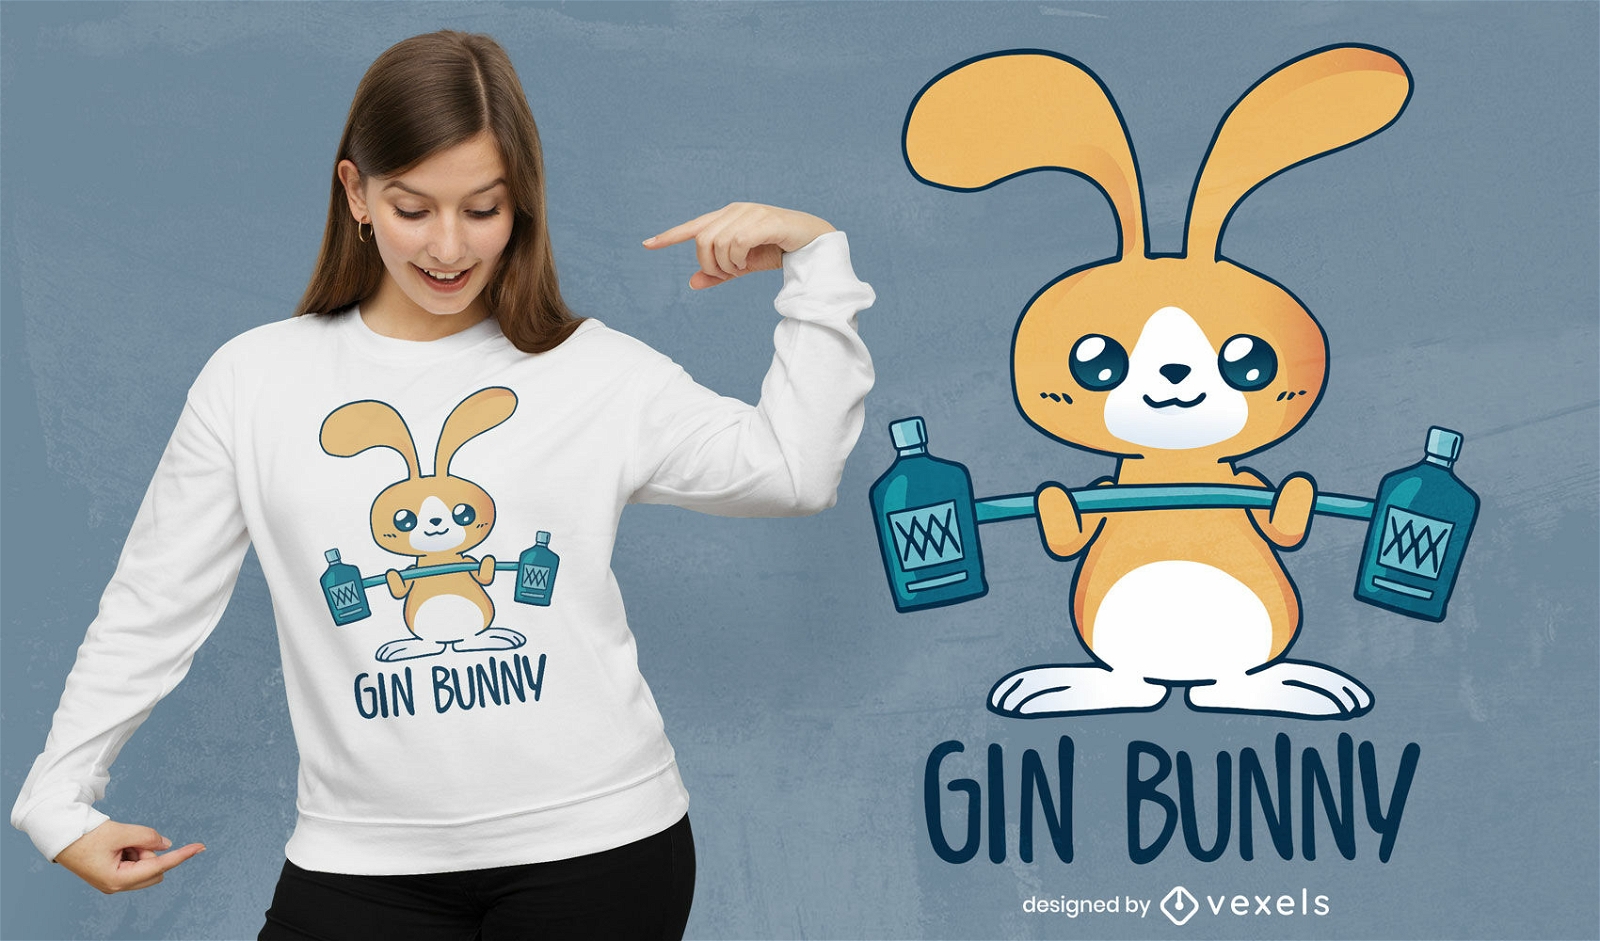 Dise?o de camiseta gin bunny